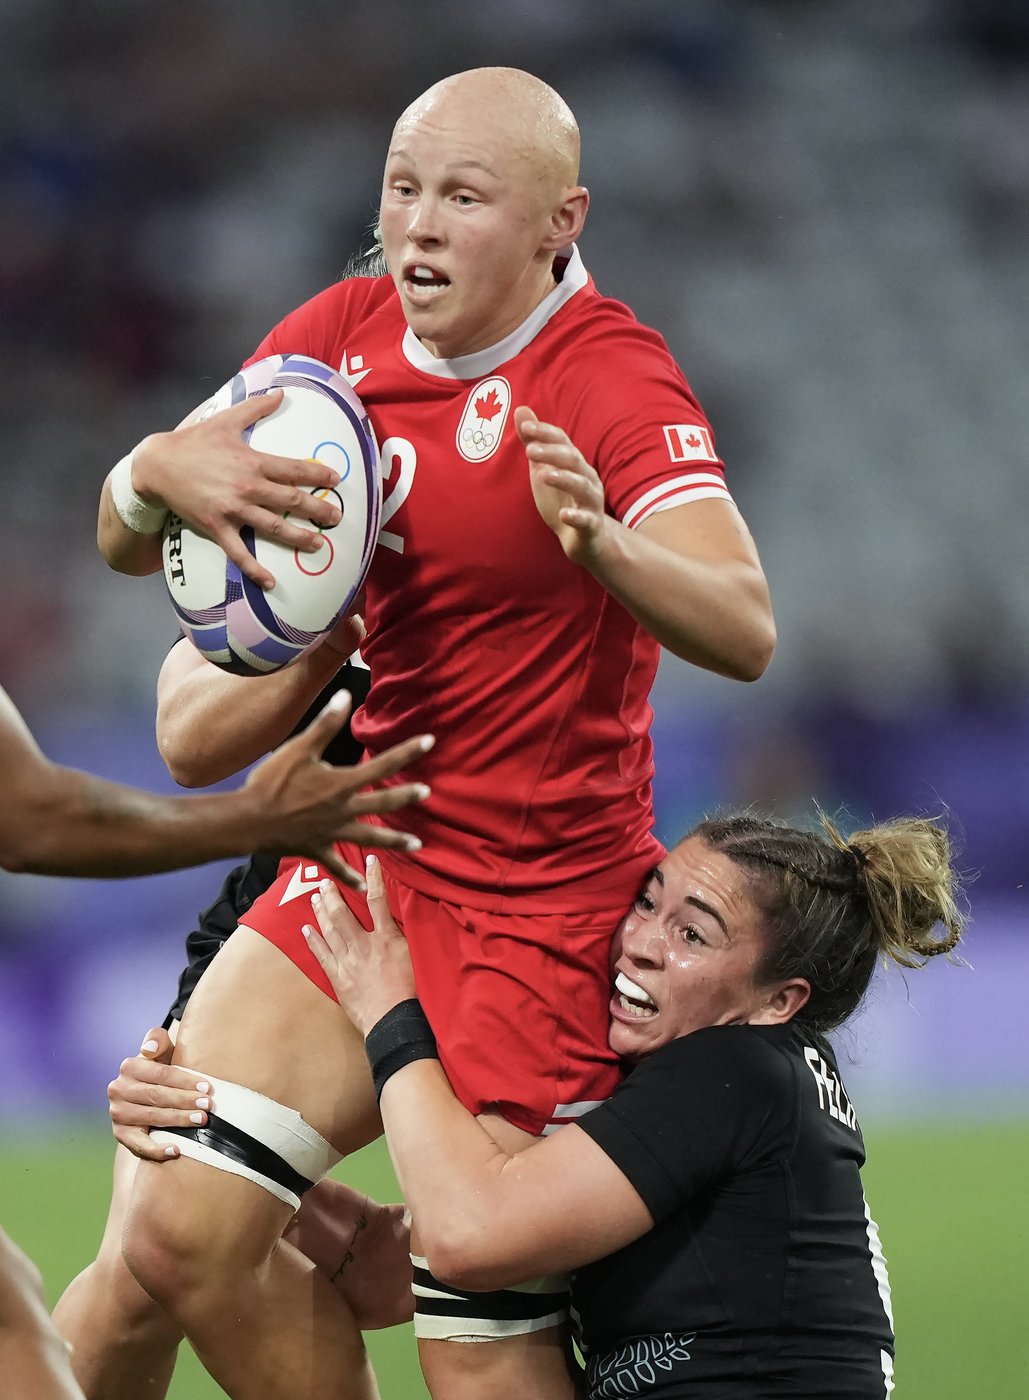 Le Canada accède à la finale en rugby à sept féminin aux JO de Paris